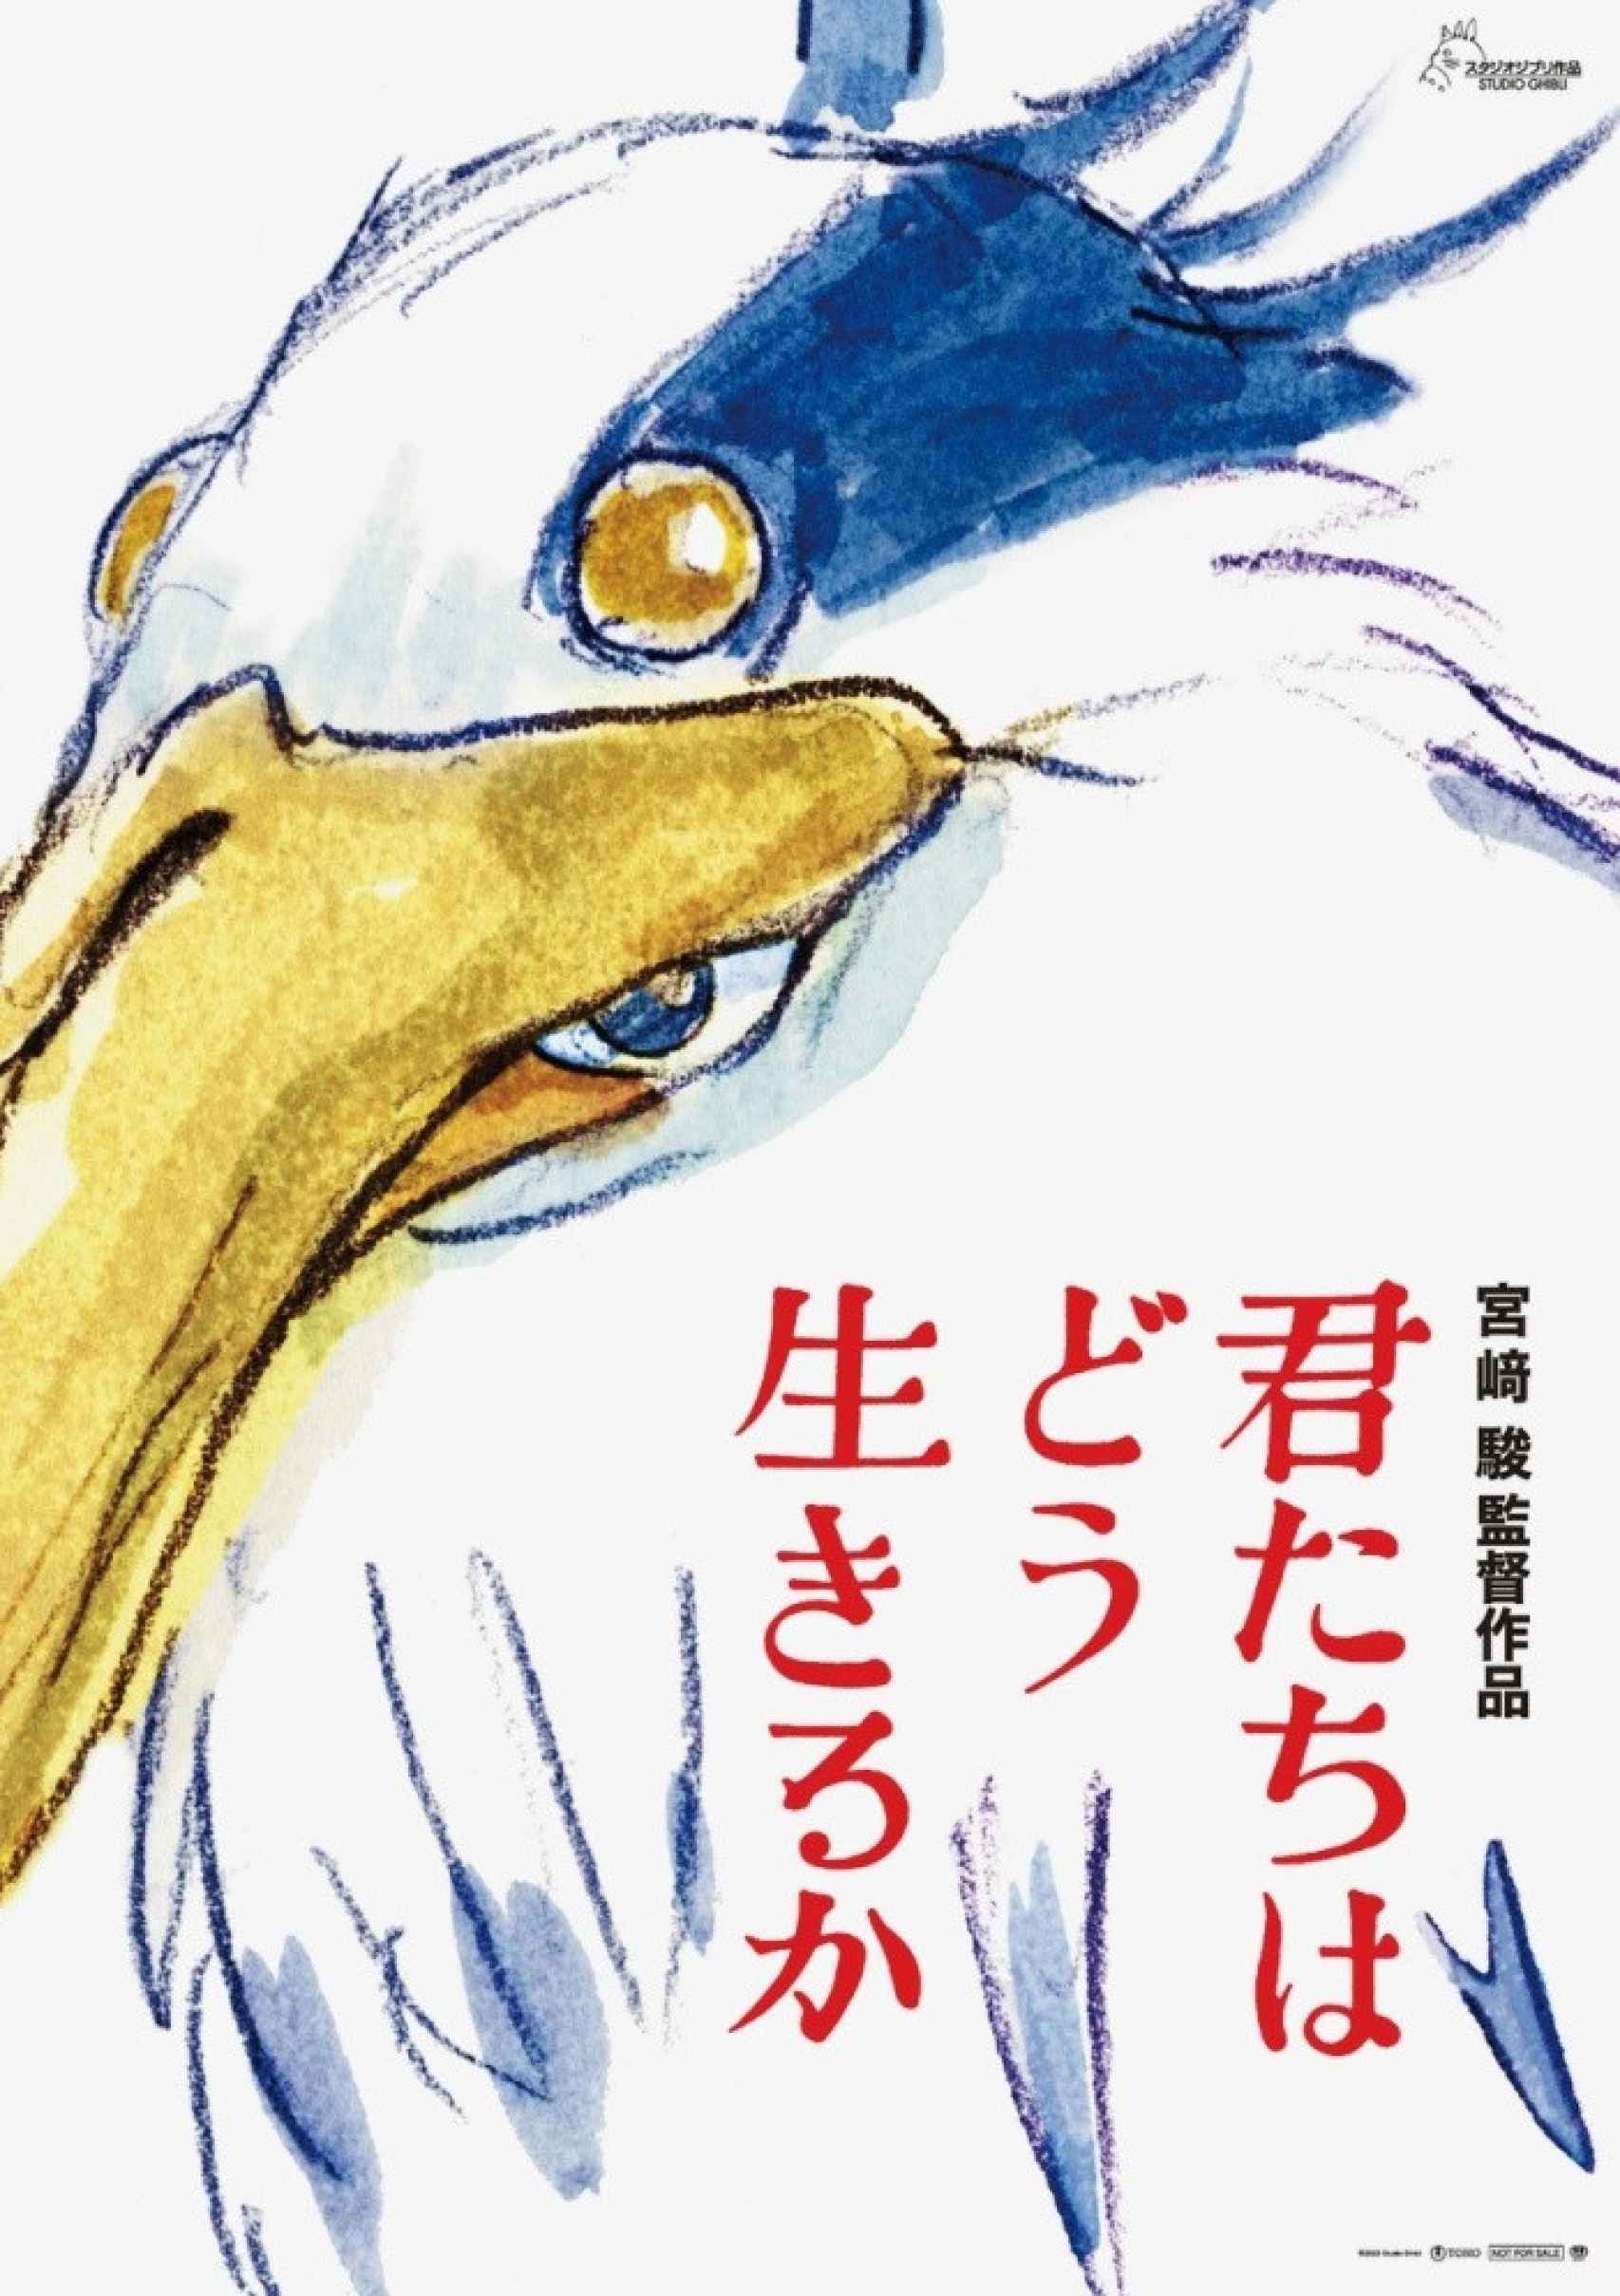 Cartel de 'The Boy and the Heron’ de Hayao Miyazaki.